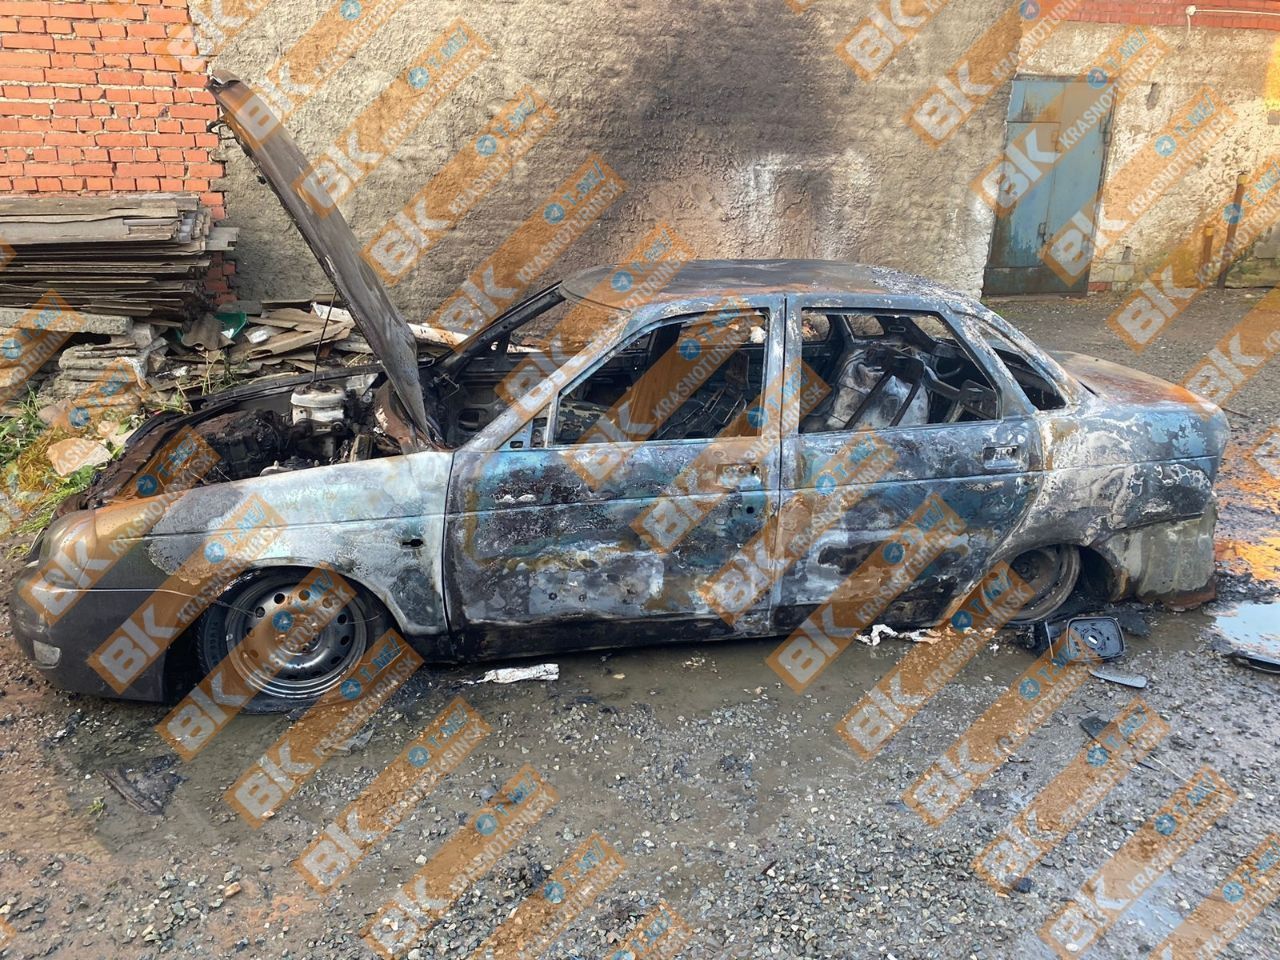 Стали известны подробности пожара, в котором пострадал автомобиль. Вероятно, это поджог